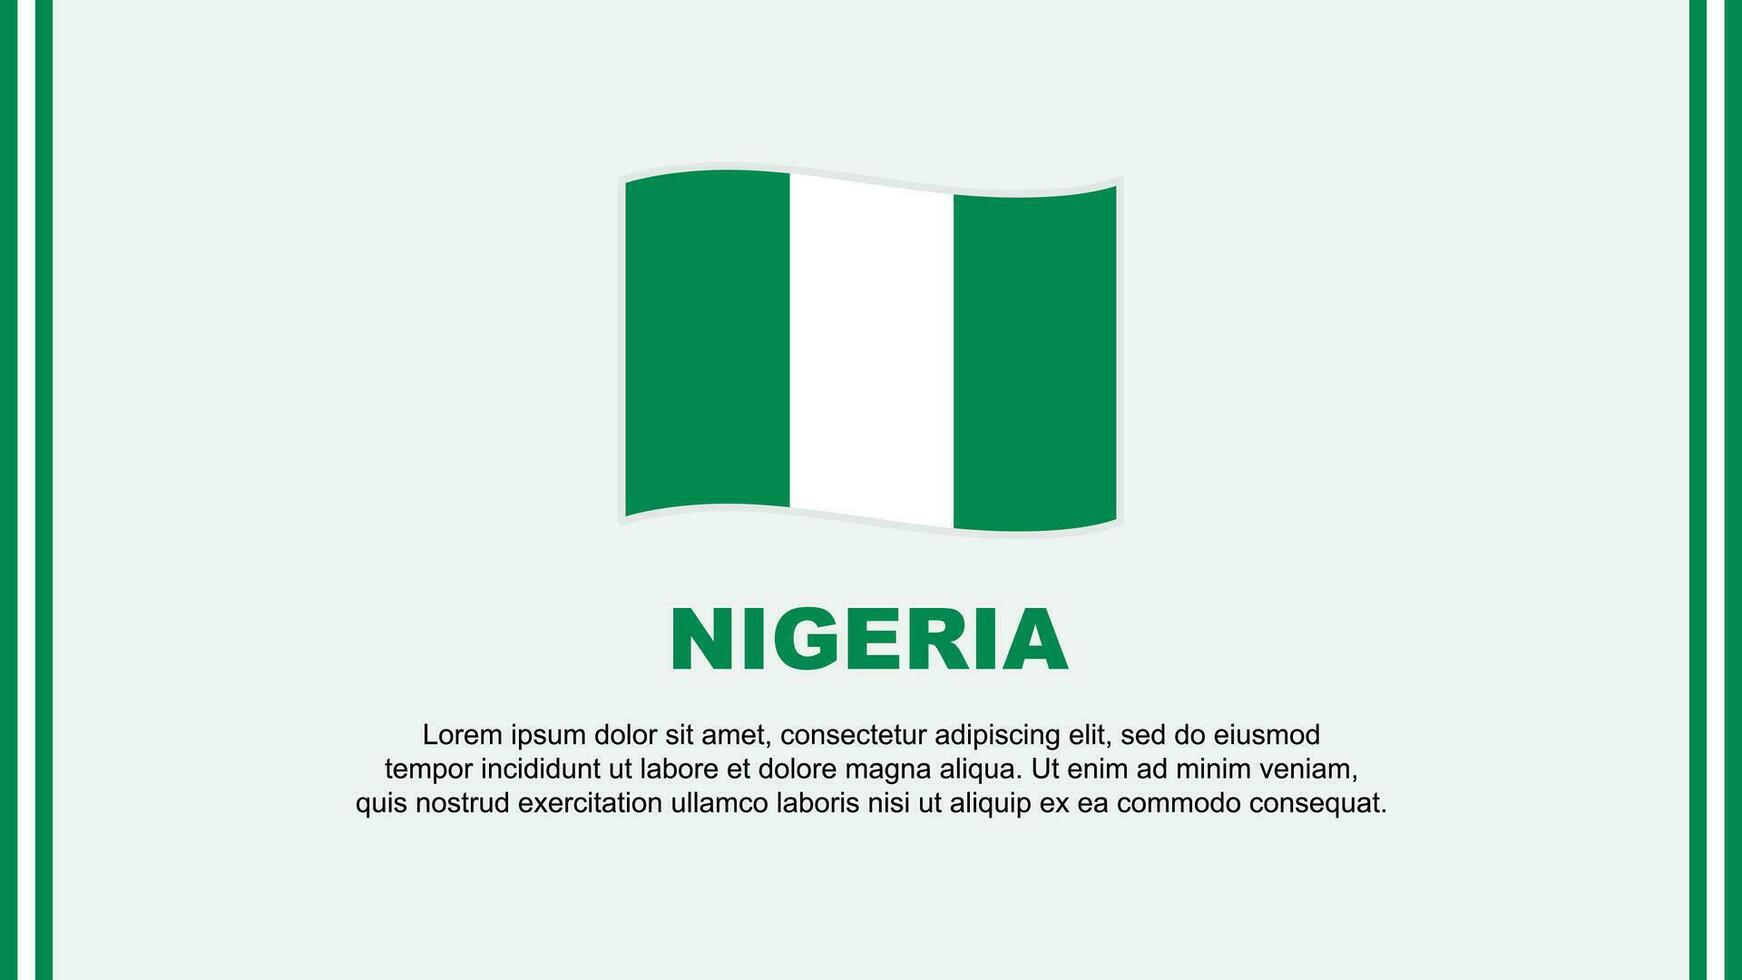 Nigeria Flagge abstrakt Hintergrund Design Vorlage. Nigeria Unabhängigkeit Tag Banner Sozial Medien Vektor Illustration. Nigeria Karikatur